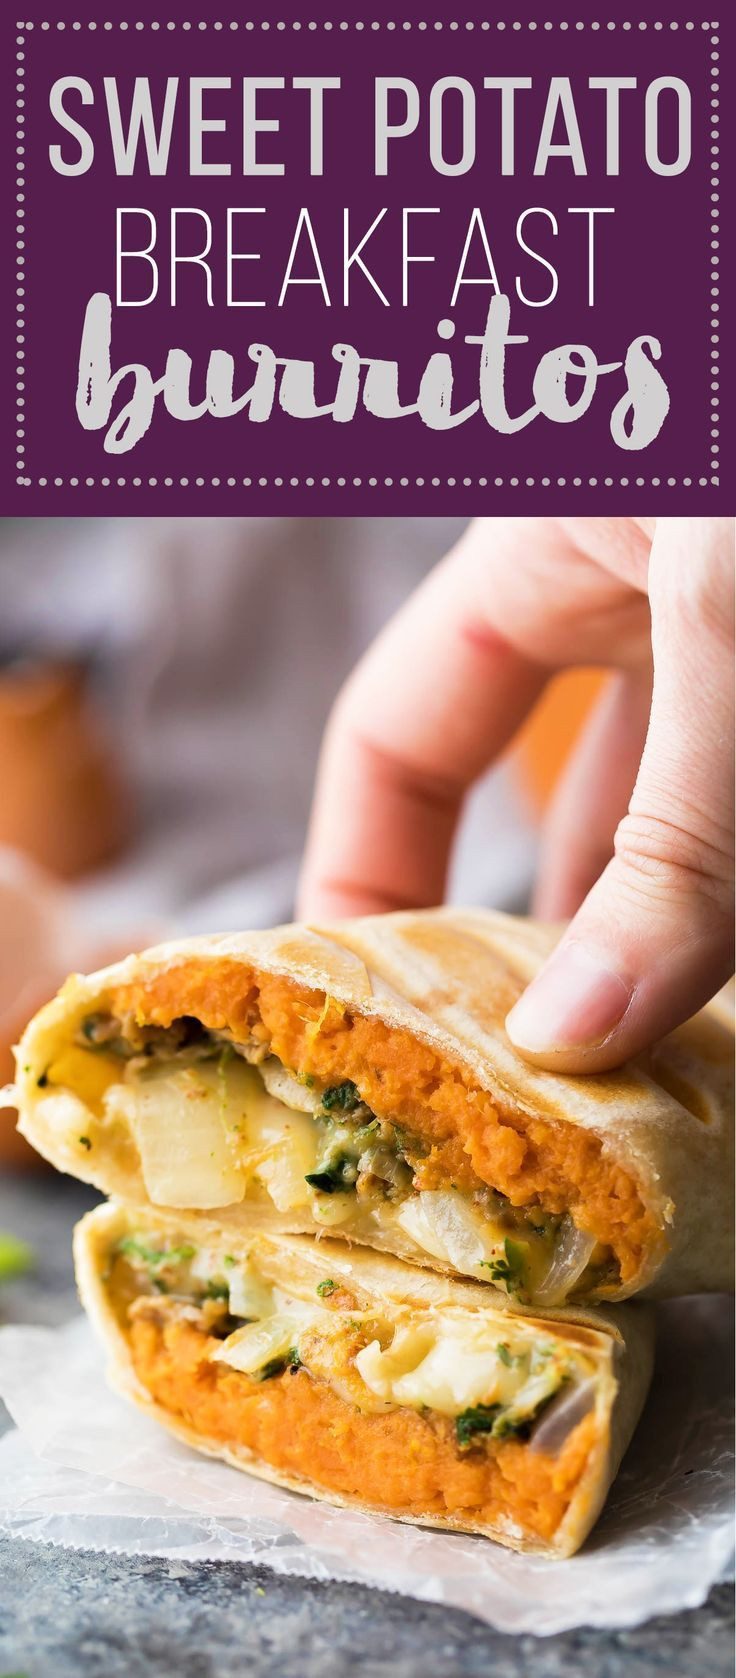 Healthy Breakfast Burrito Meal Prep
 Best 25 Healthy breakfast burritos ideas on Pinterest